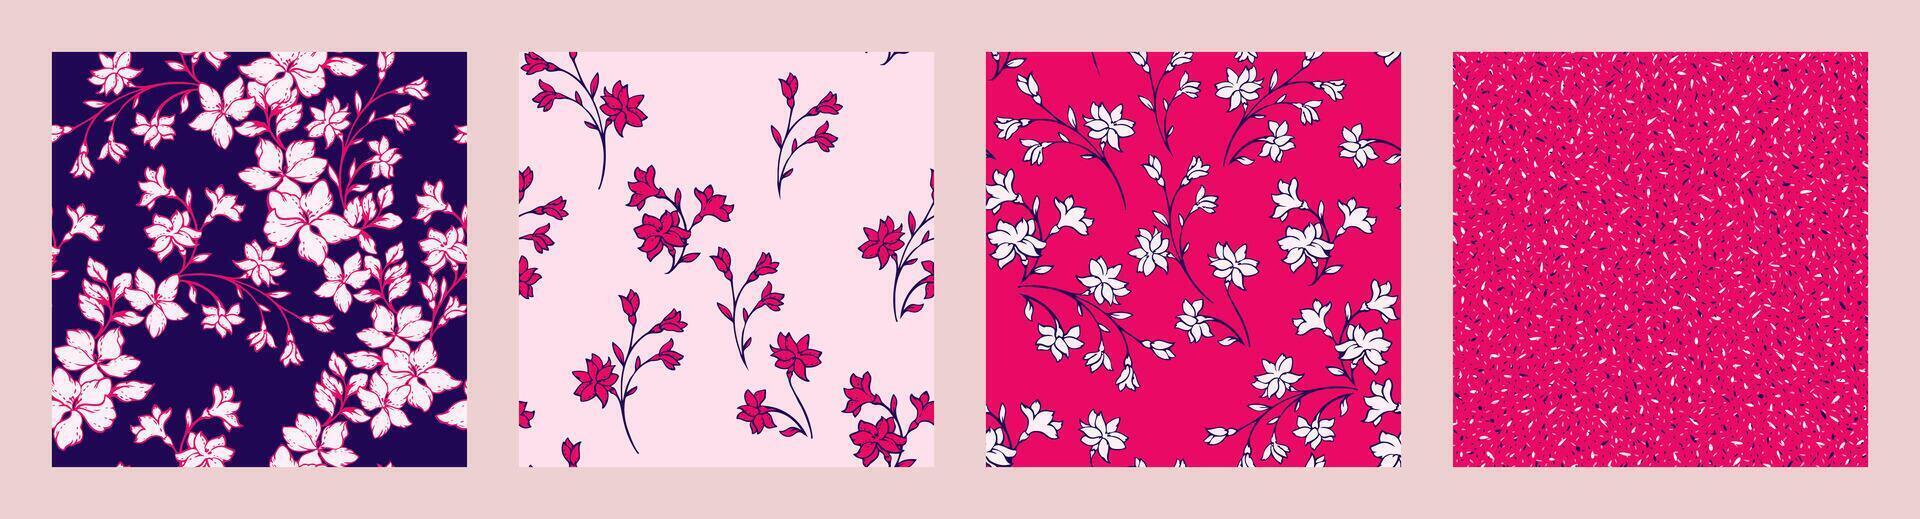 ljus collage av uppsättning sömlös mönster med abstrakt stiliserade blommar vild blommor. vektor hand dragen skiss silhuetter försiktigt blommig stjälkar, former slumpmässig fläckar, polka prickar. mallar för design